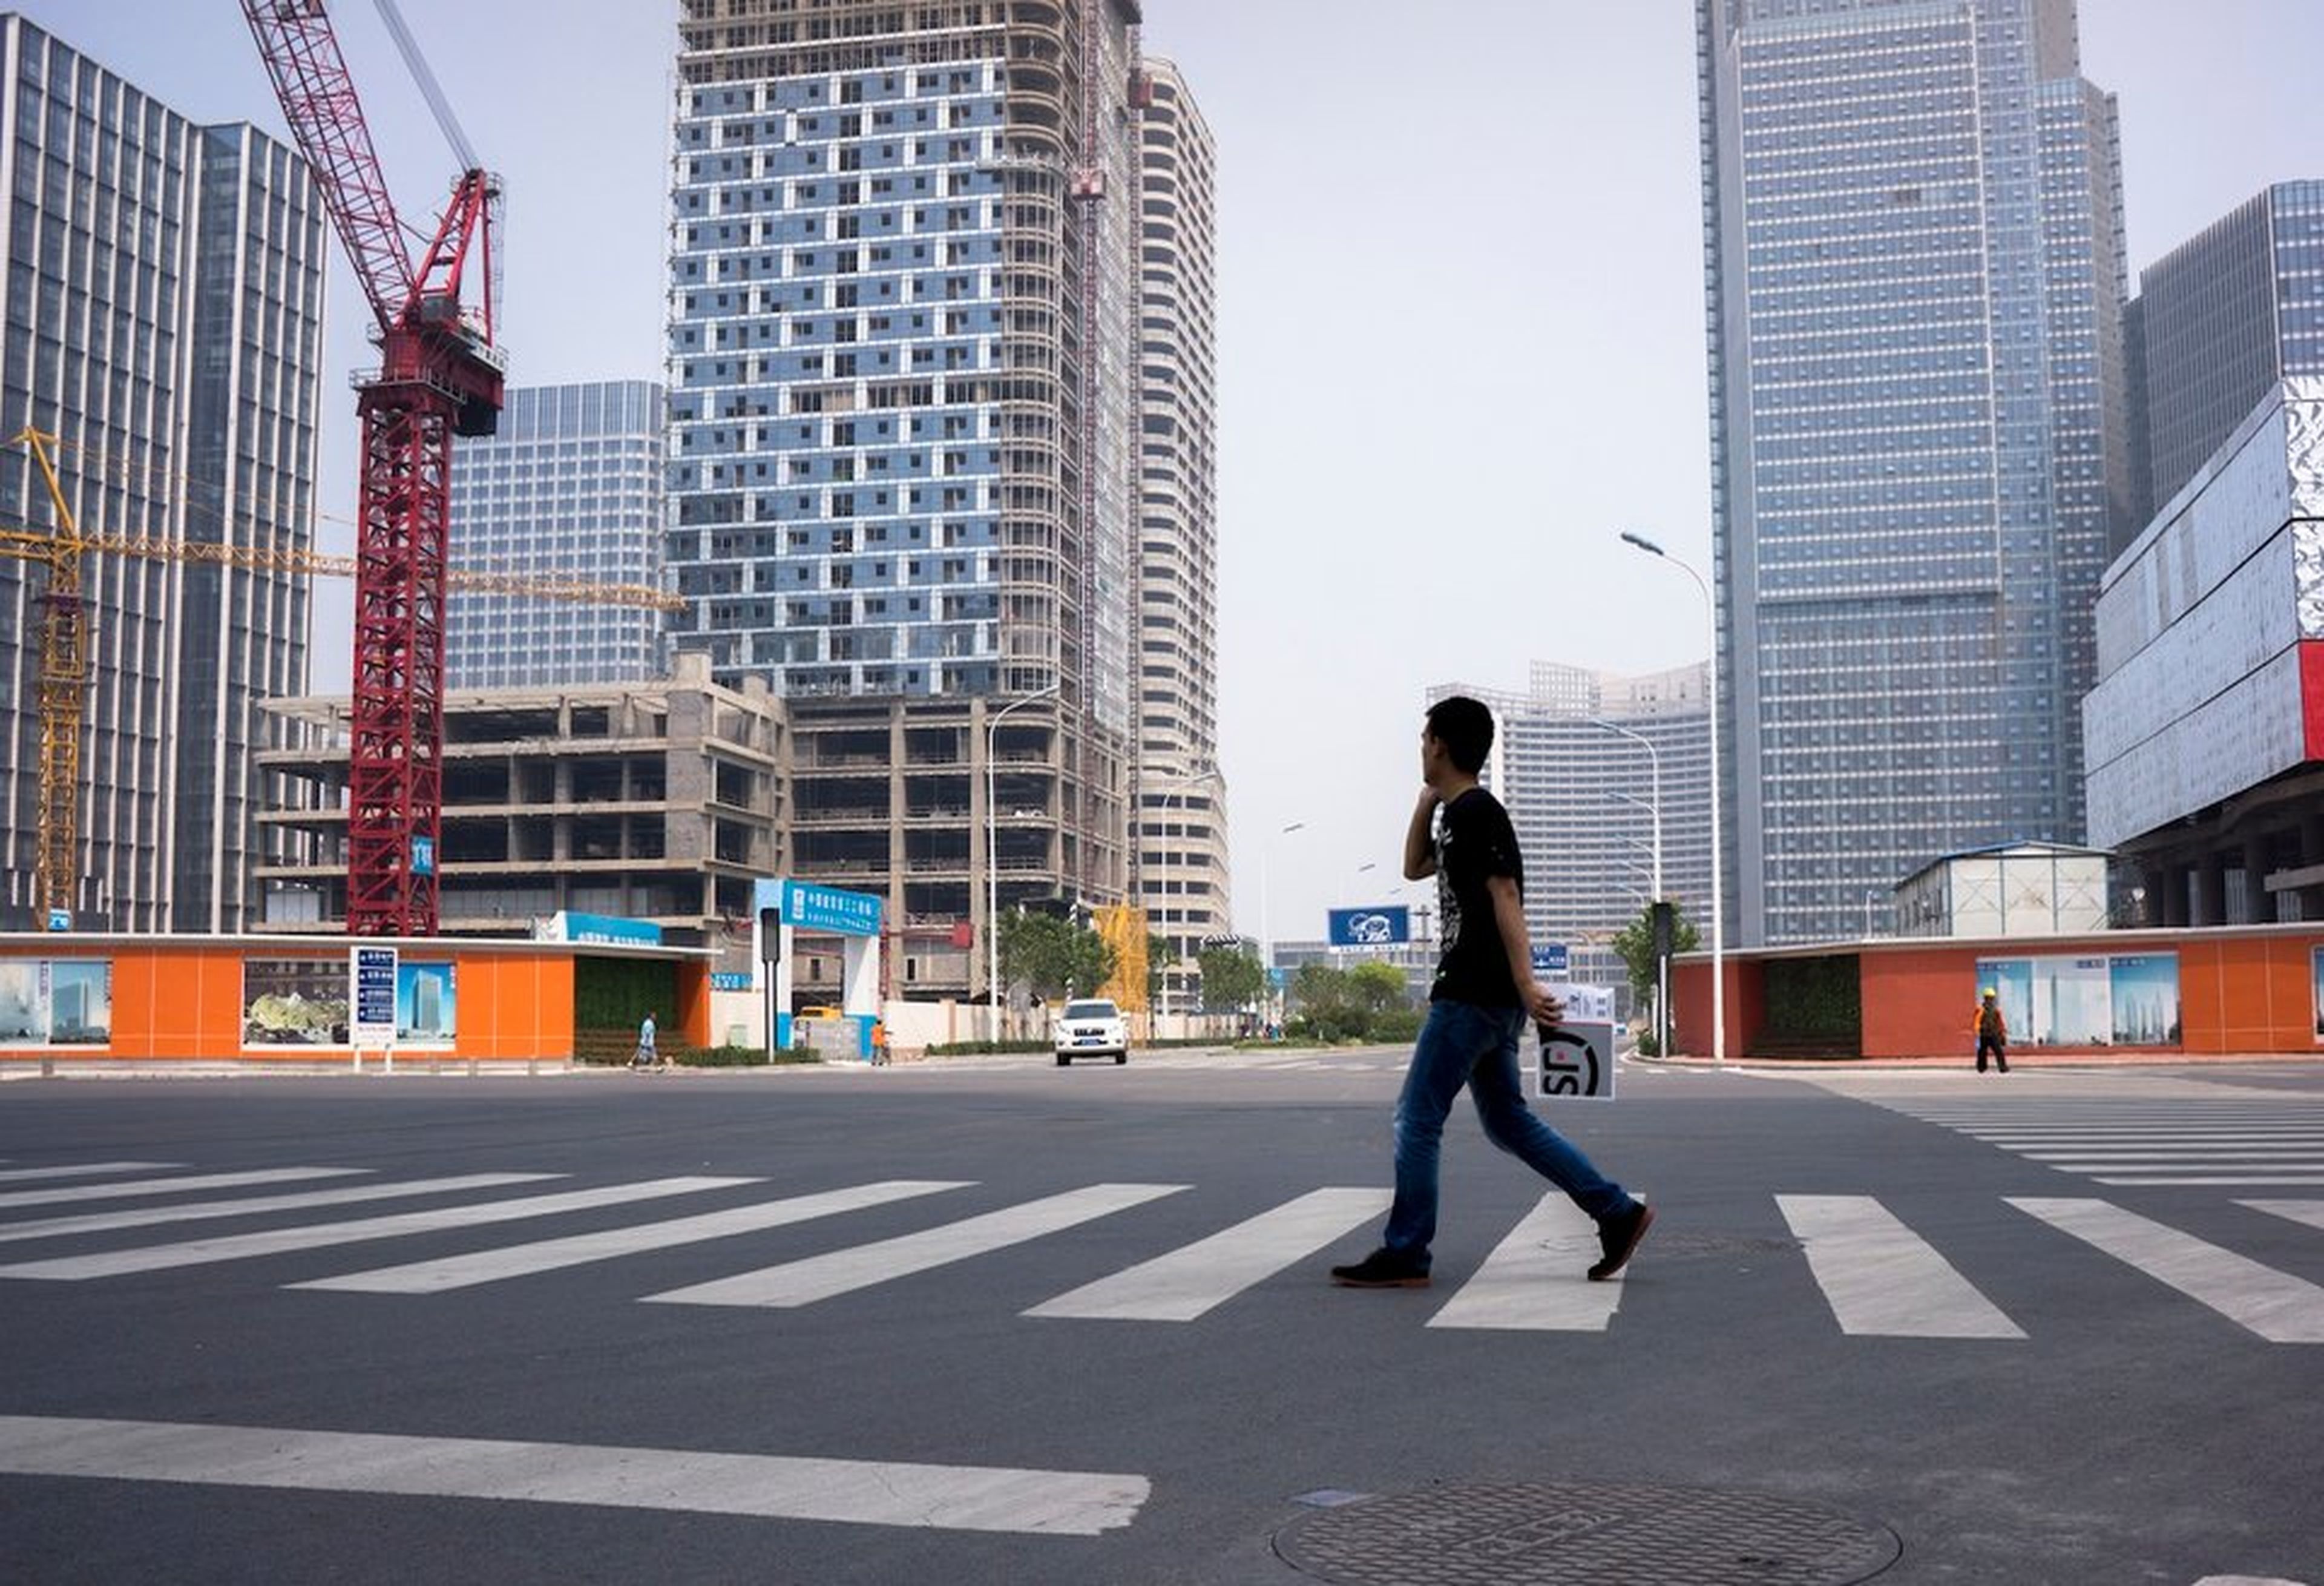 Obras en construcción y calles desocupadas en la bahía de Xiangluo, un nuevo distrito comercial gigante en construcción en Tianjin (China).